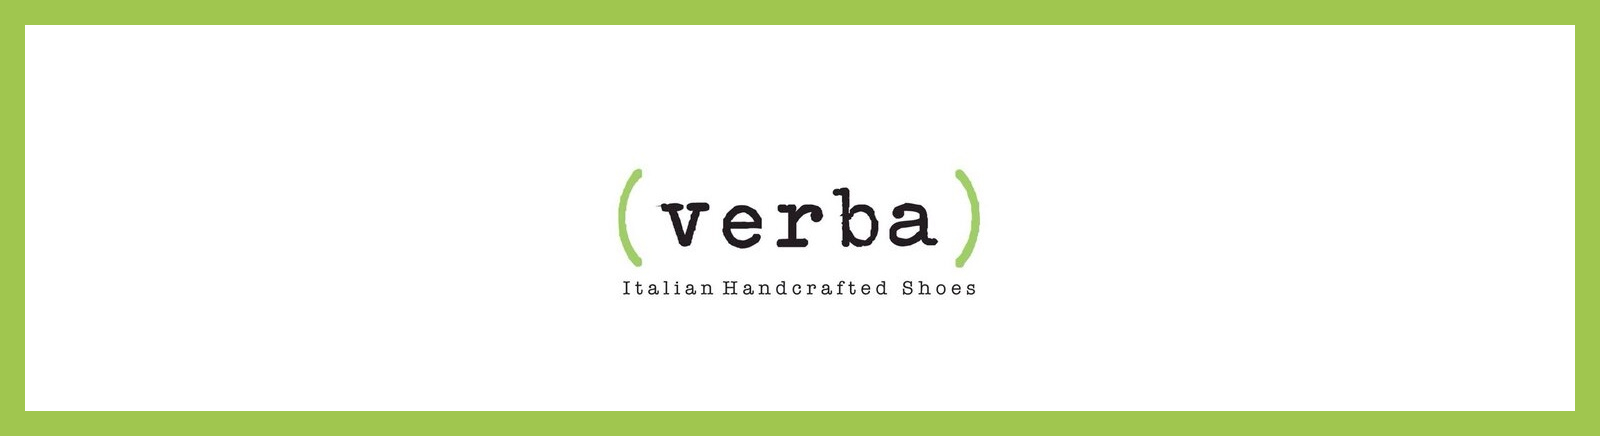 Verba Markenschuhe online bestellen im Prange Schuhe Shop